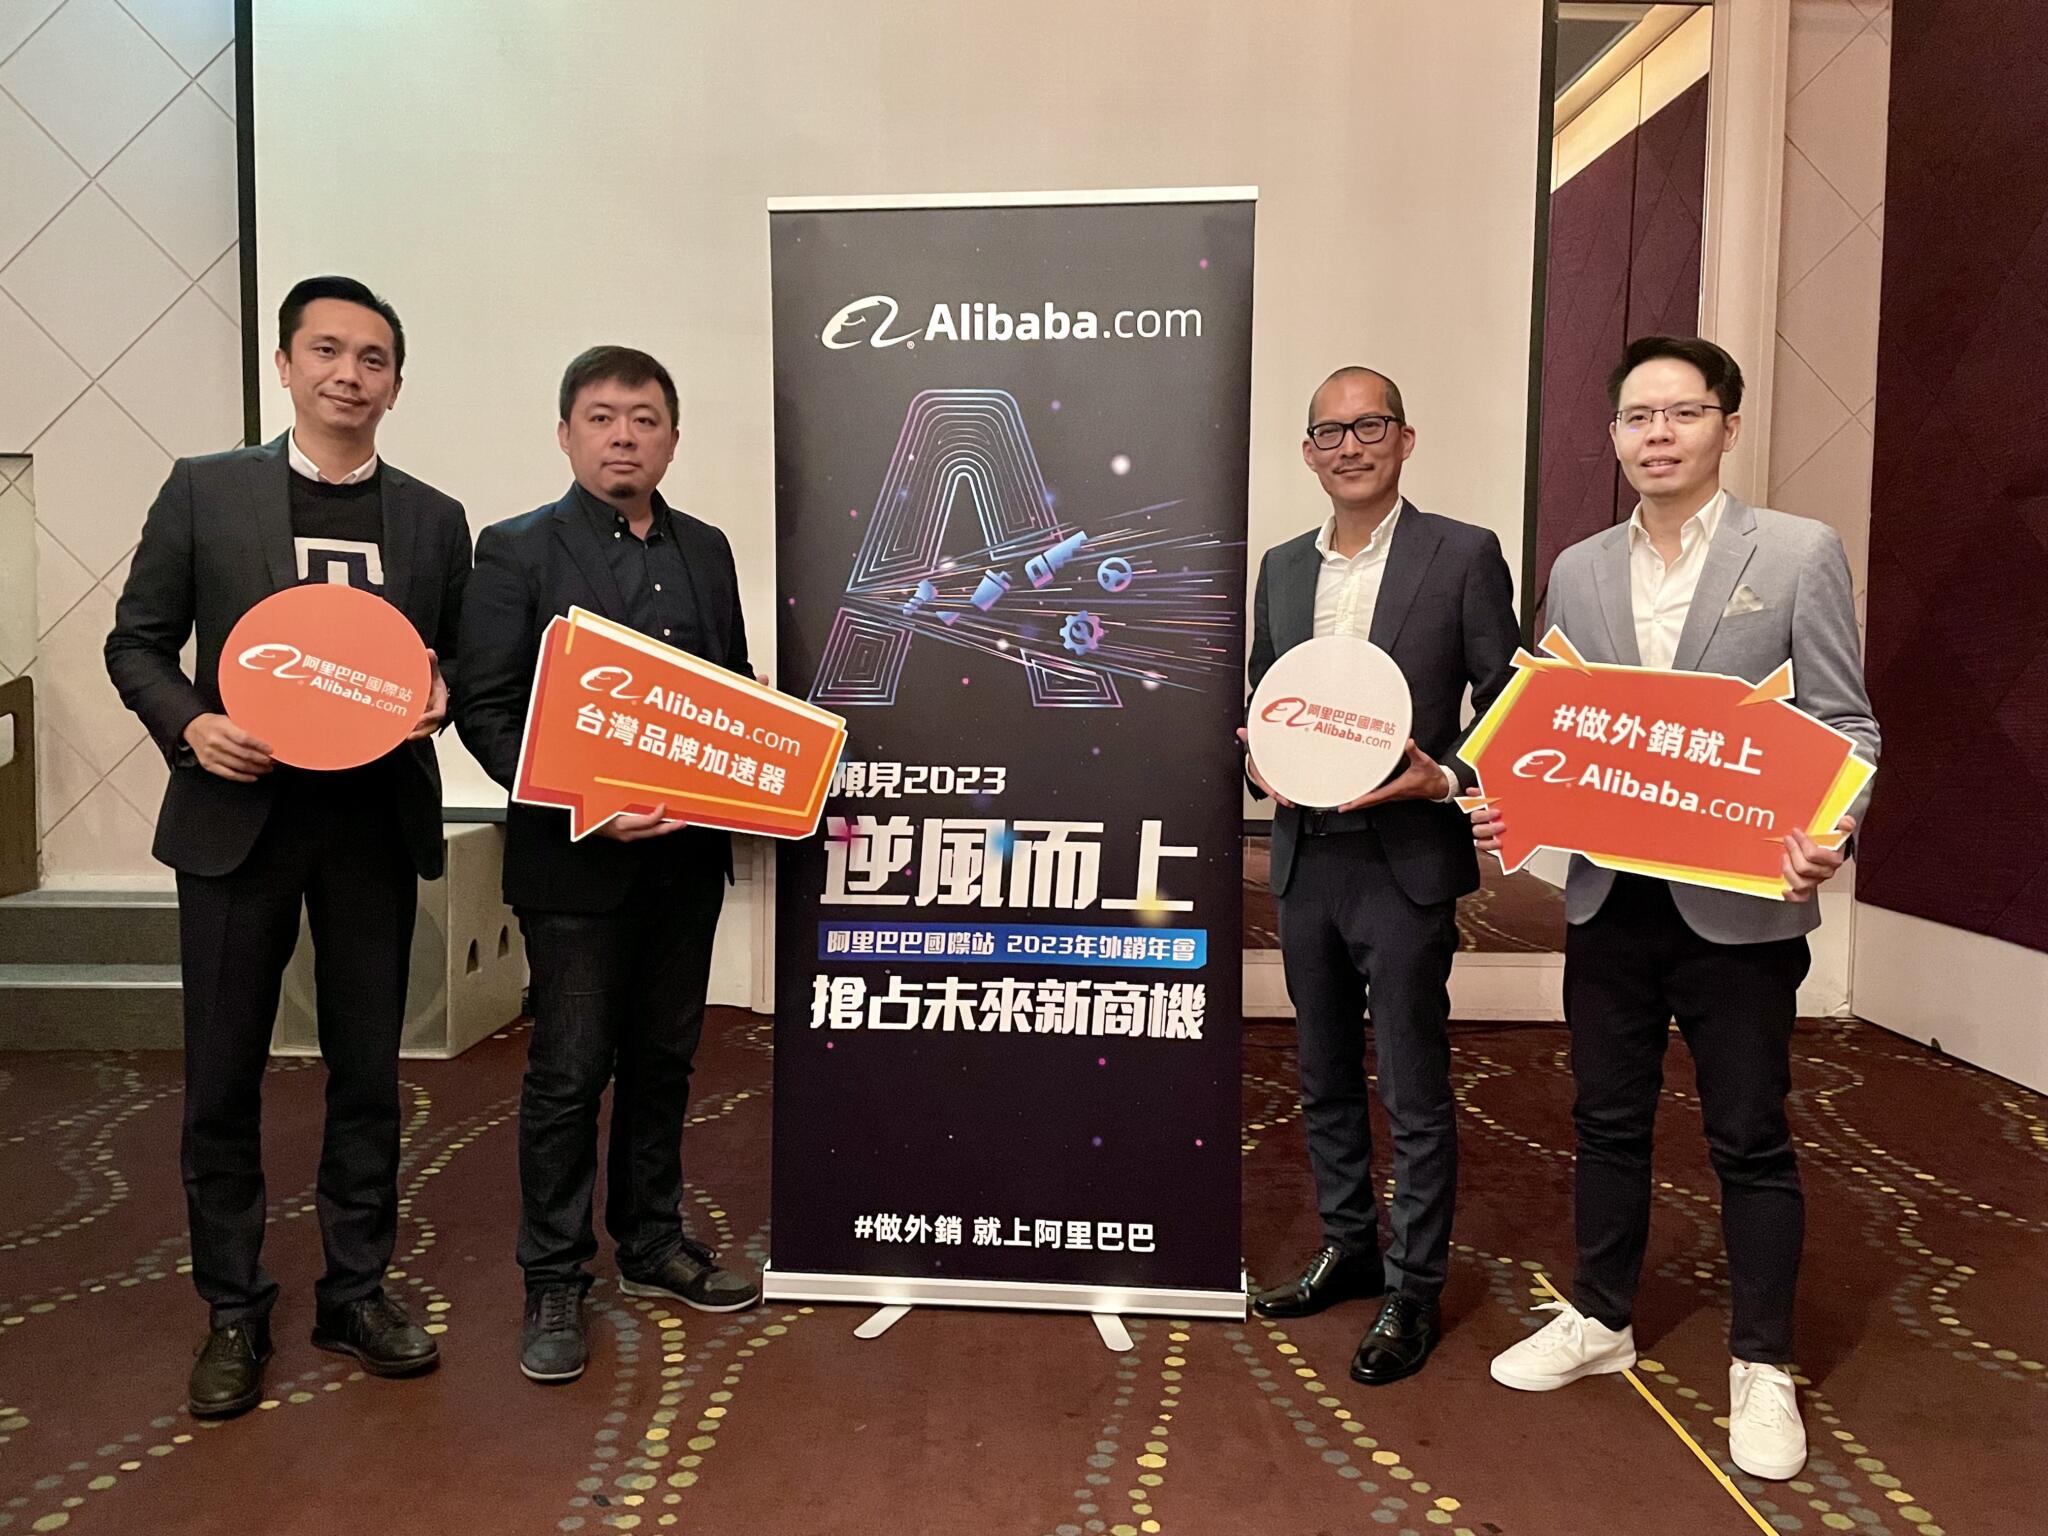 【有影】Alibaba.com宣布新任台灣總經理  陳寶圭不畏逆風助企業拓海外市場